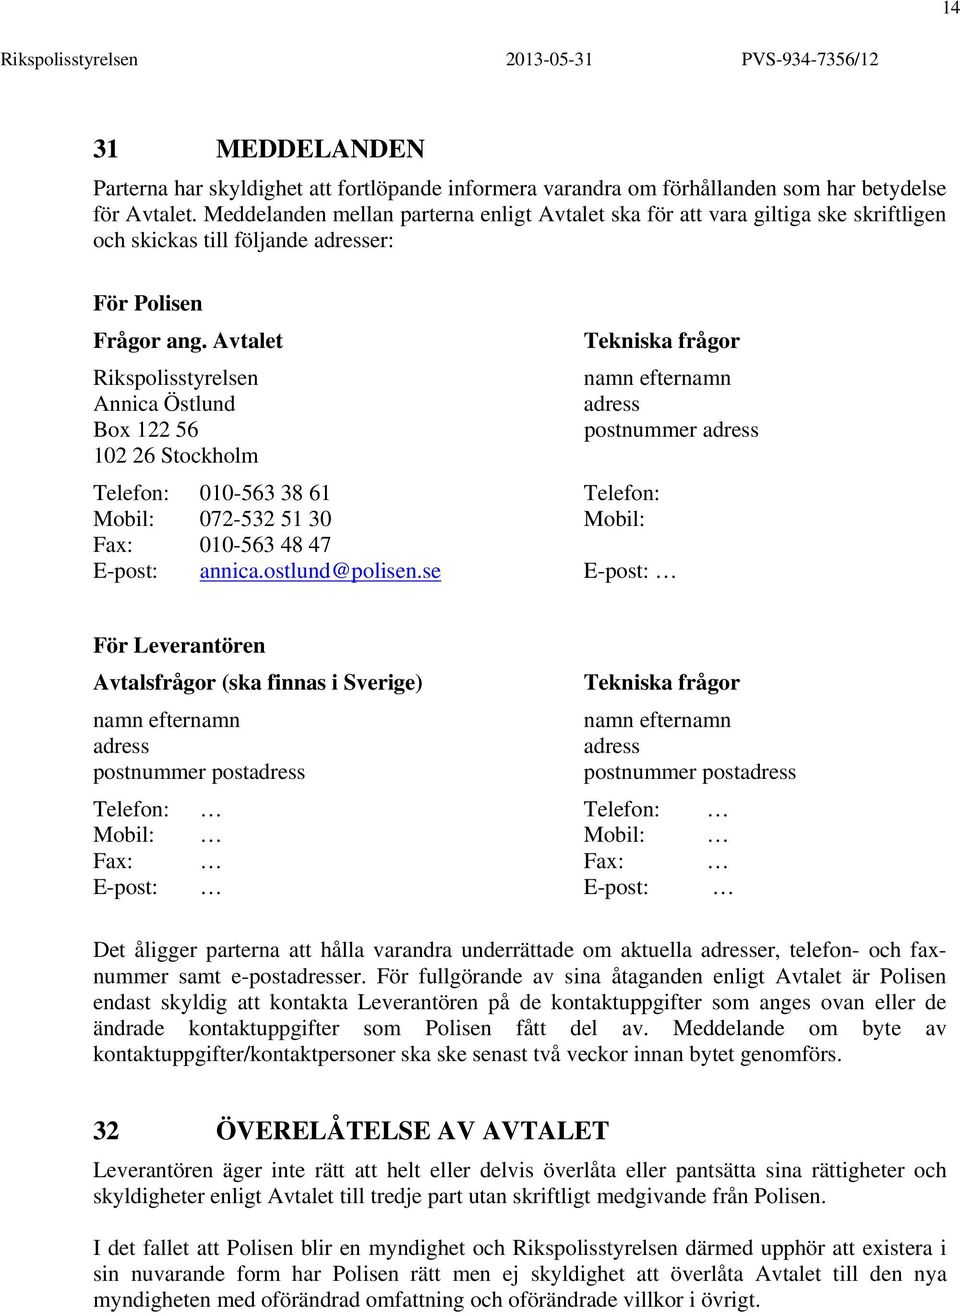 Avtalet Tekniska frågor Rikspolisstyrelsen namn efternamn Annica Östlund adress Box 122 56 postnummer adress 102 26 Stockholm Telefon: 010-563 38 61 Telefon: Mobil: 072-532 51 30 Mobil: Fax: 010-563